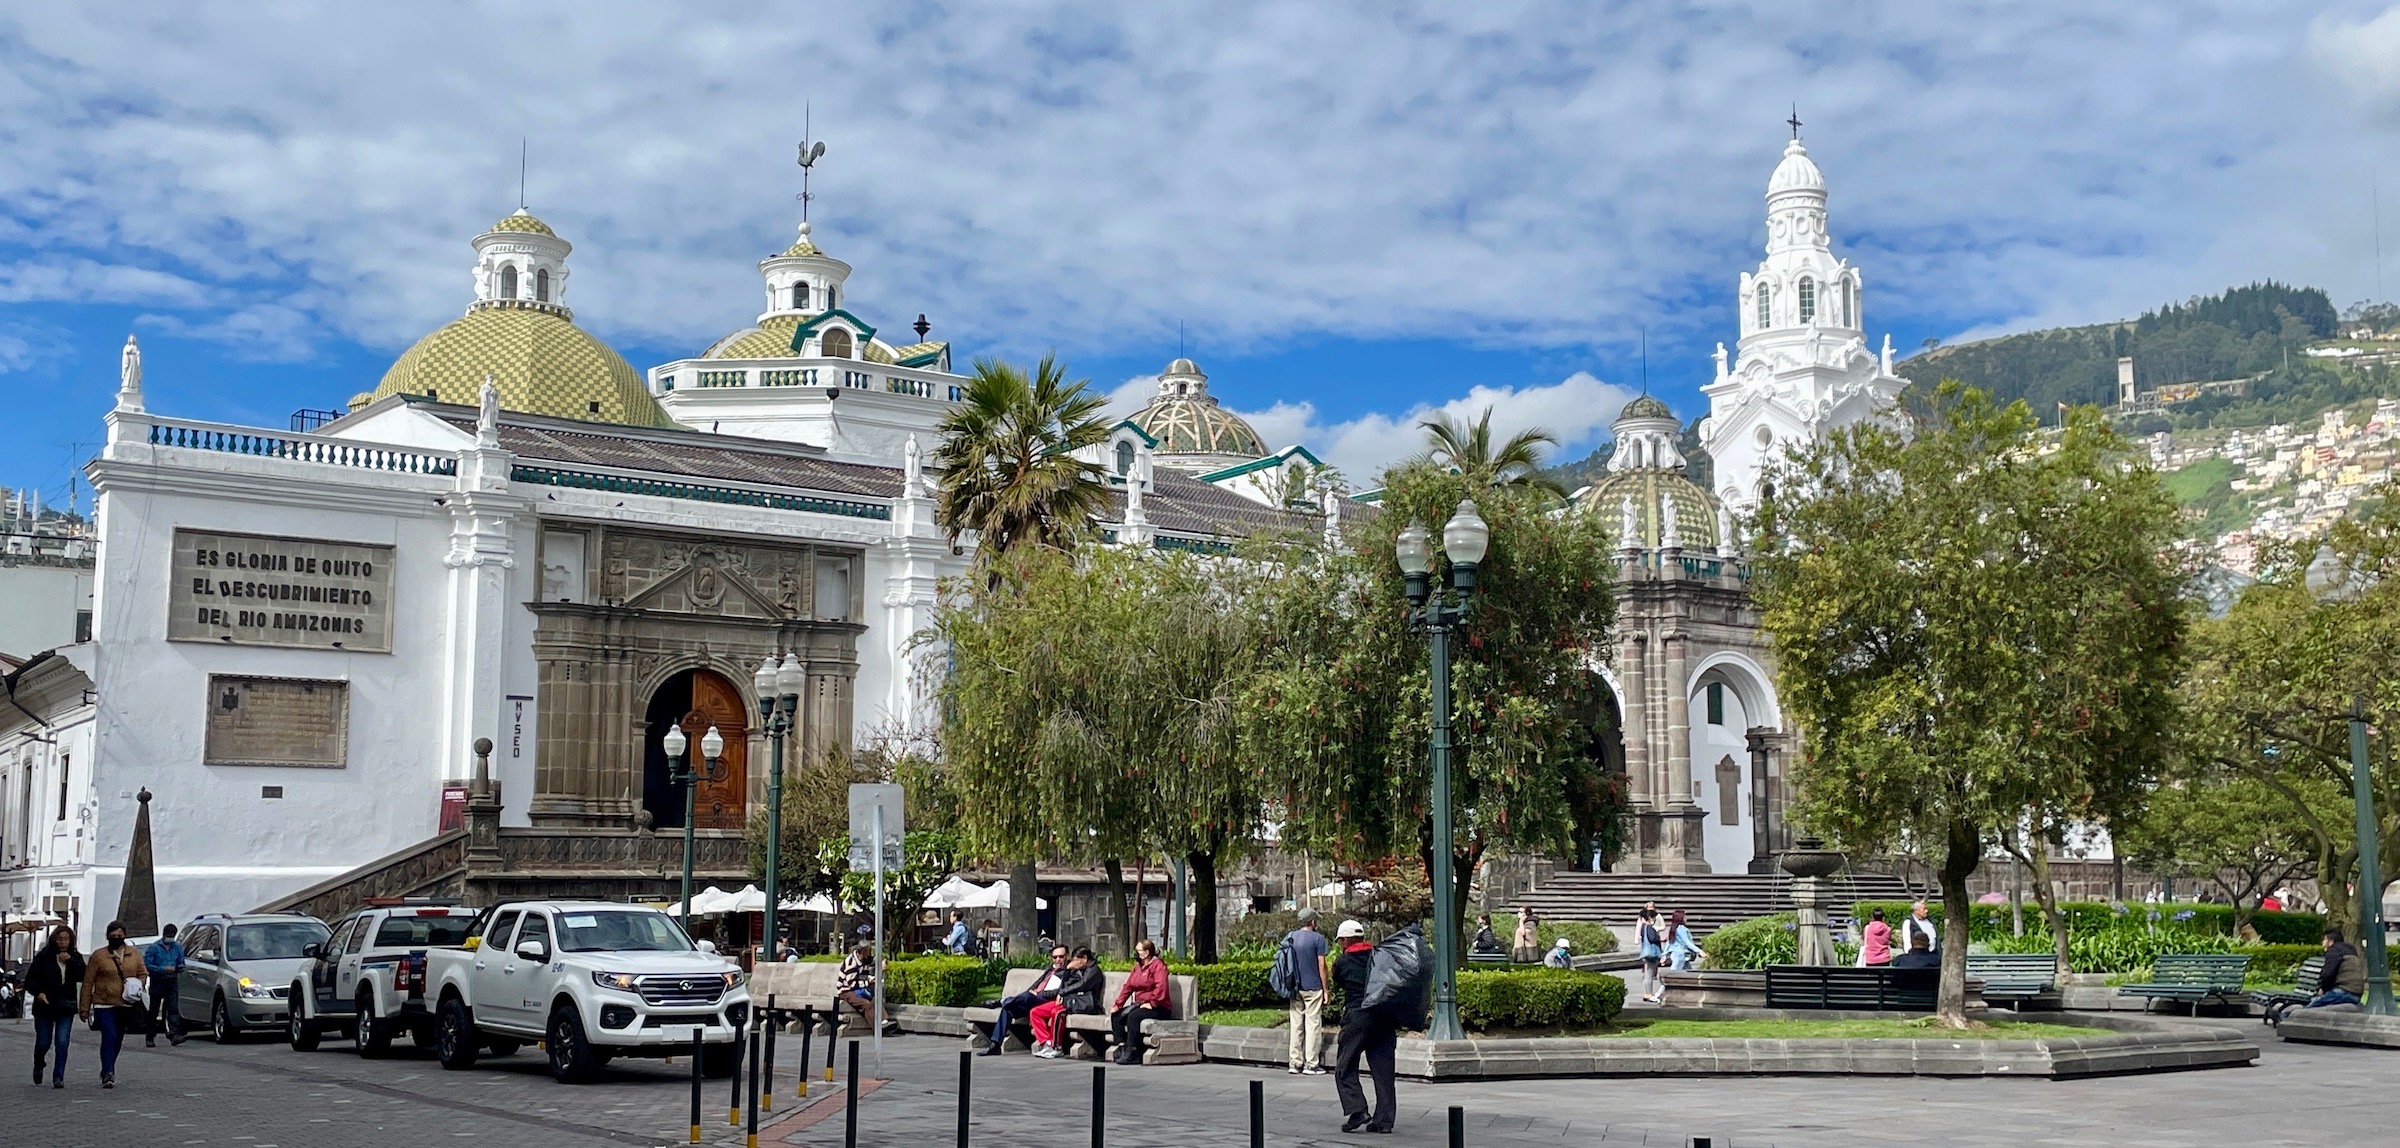 Plaza Grande, Quito